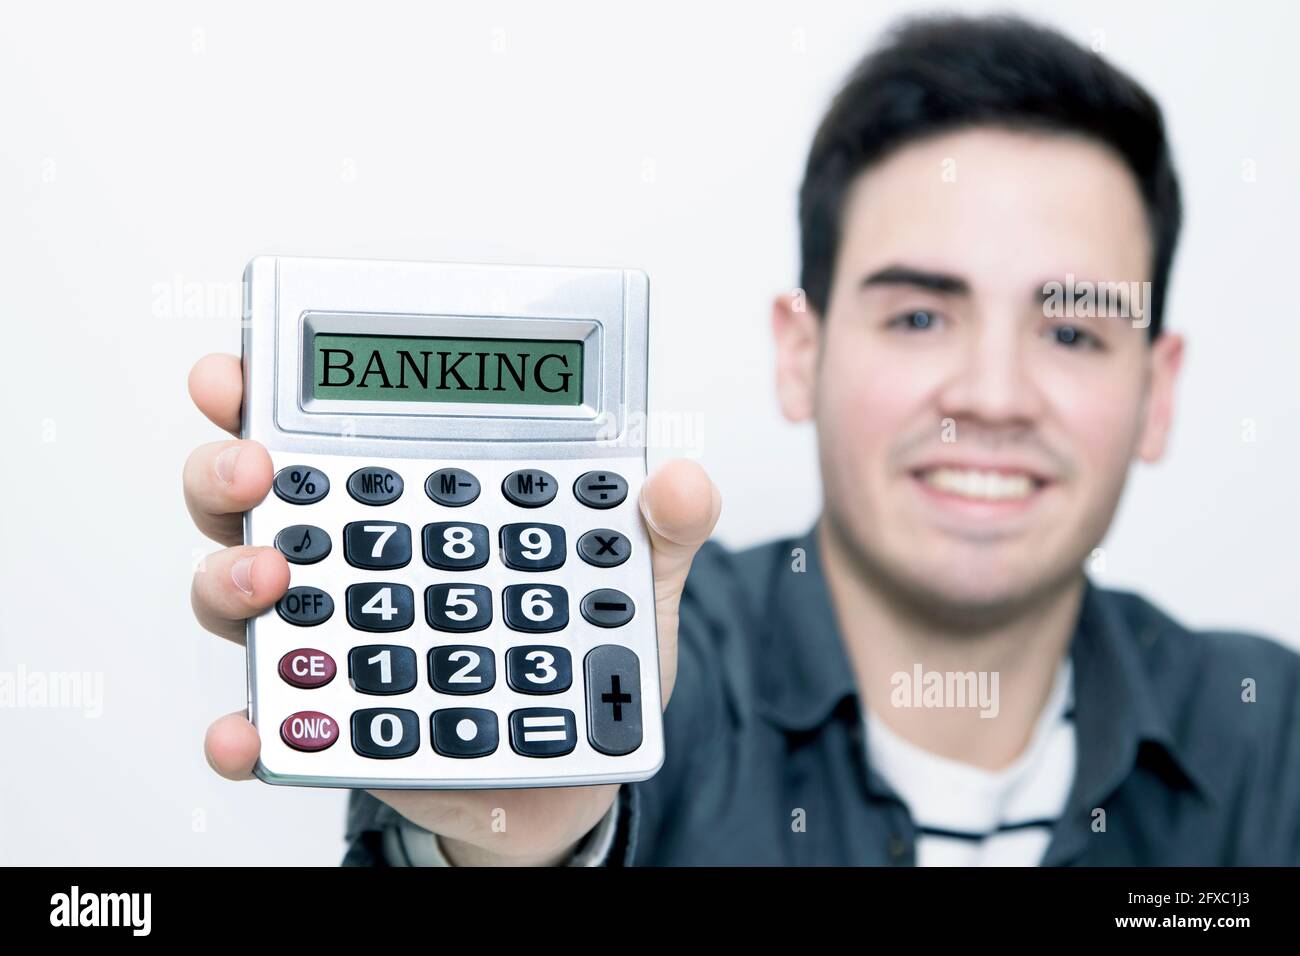 calculadora en primer plano con el hombre al fondo sonriendo Foto de stock